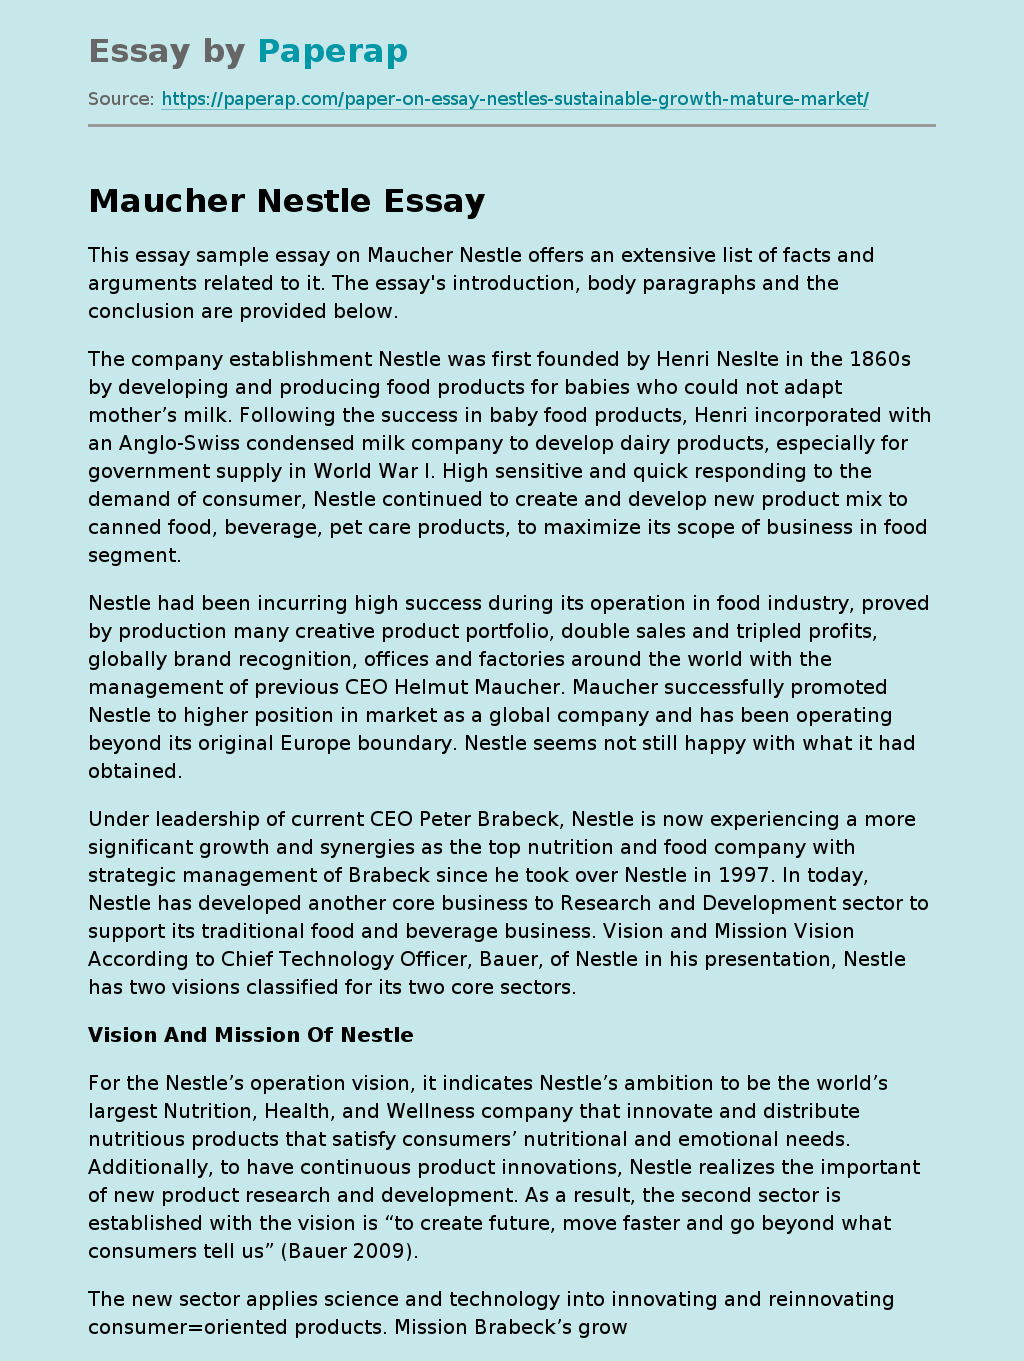 Maucher Nestle